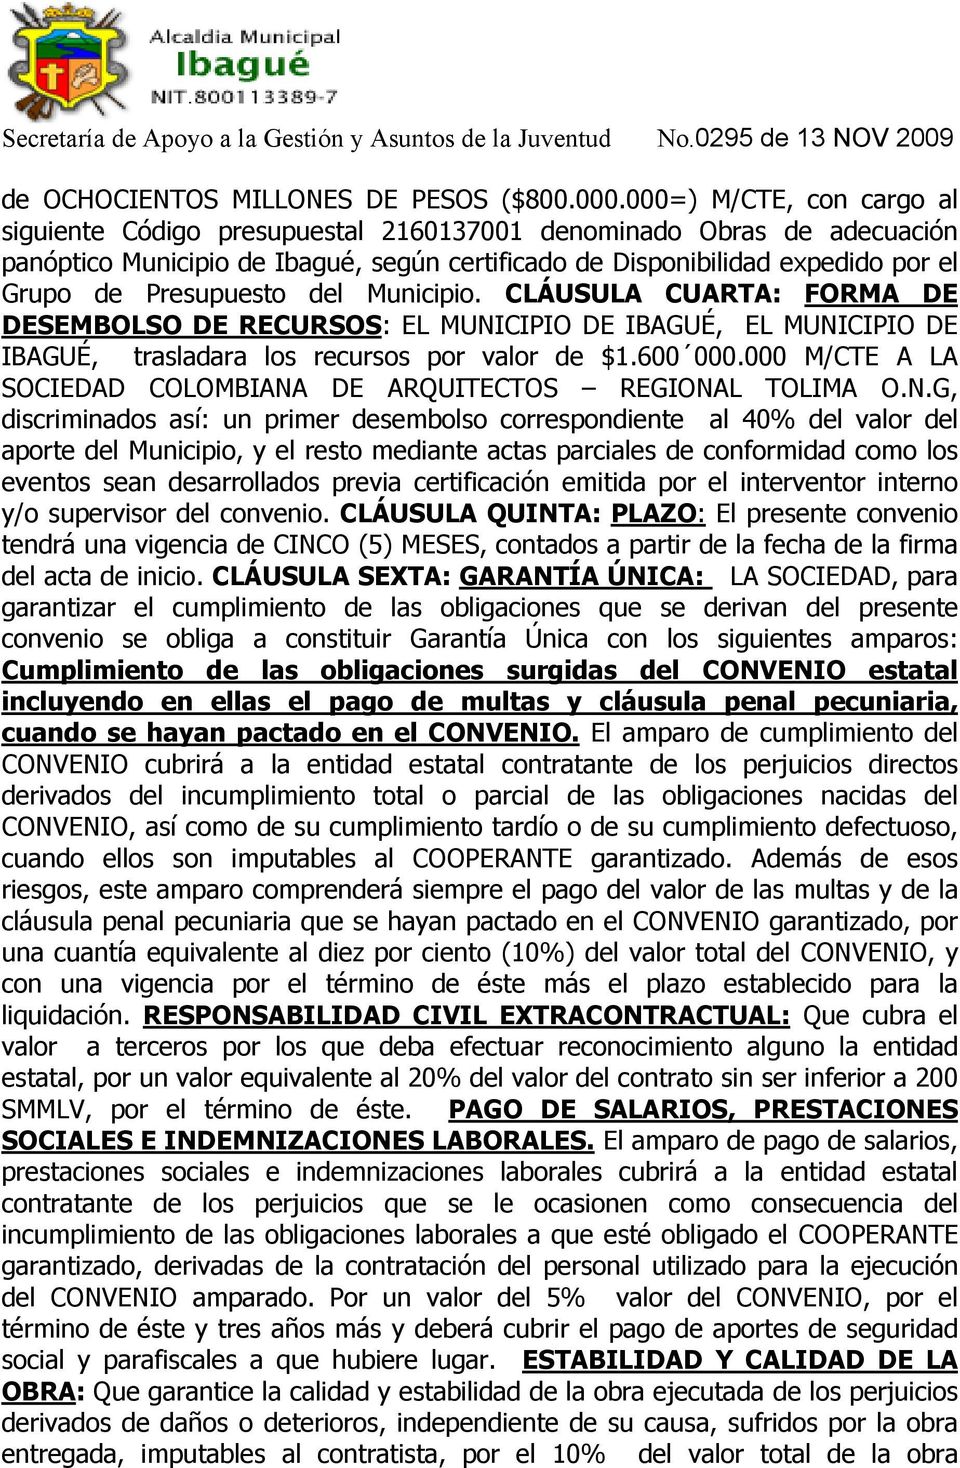 Presupuesto del Municipio. CLÁUSULA CUARTA: FORMA DE DESEMBOLSO DE RECURSOS: EL MUNICIPIO DE IBAGUÉ, EL MUNICIPIO DE IBAGUÉ, trasladara los recursos por valor de $1.600 000.